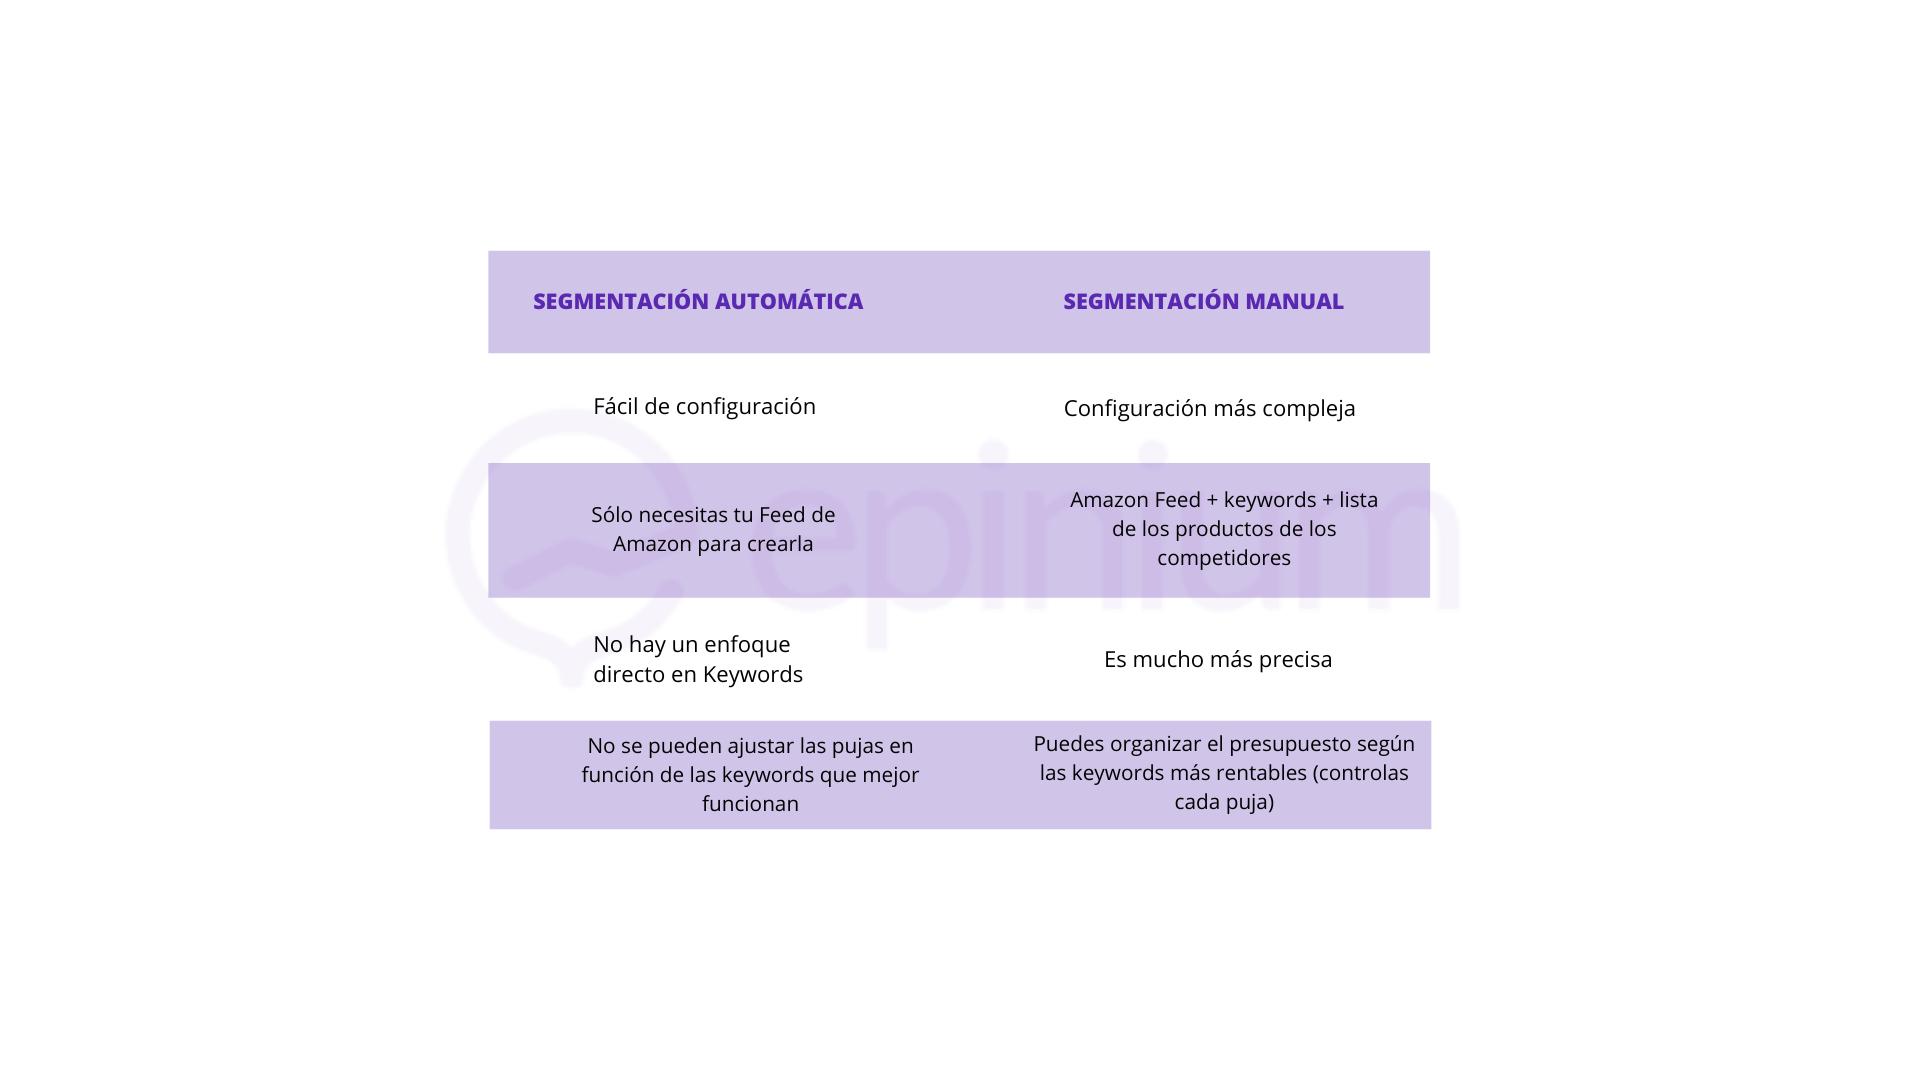 Tabla Comparativa Segmentación Automatica vs Segmentacion Manual